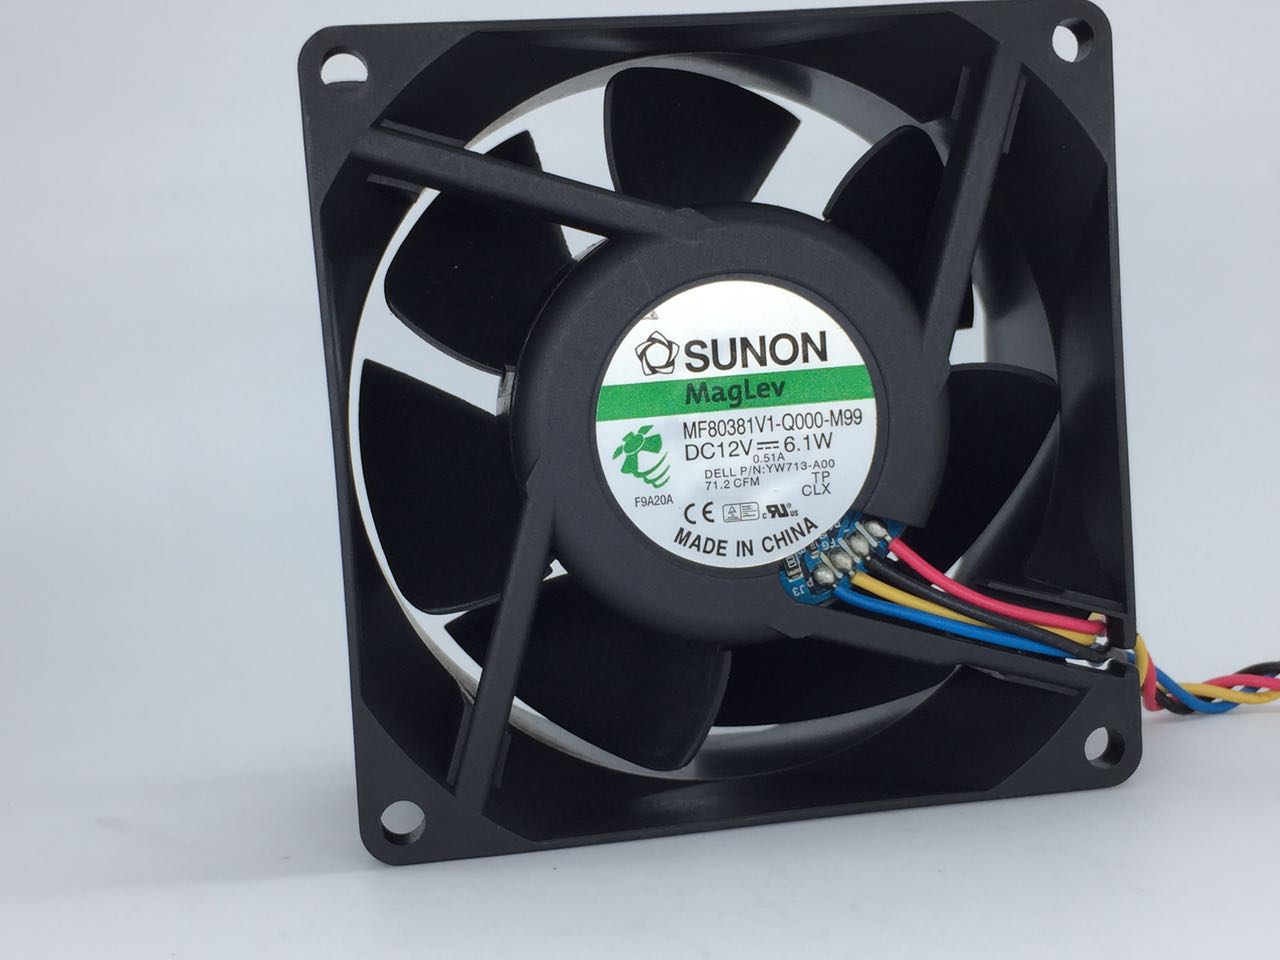 SUNON MF80381V1-Q000-M99 DC12V 6.1W 8038 8CM 80mm 80x80x38mm 5Pin 4Wire Cooling Fan